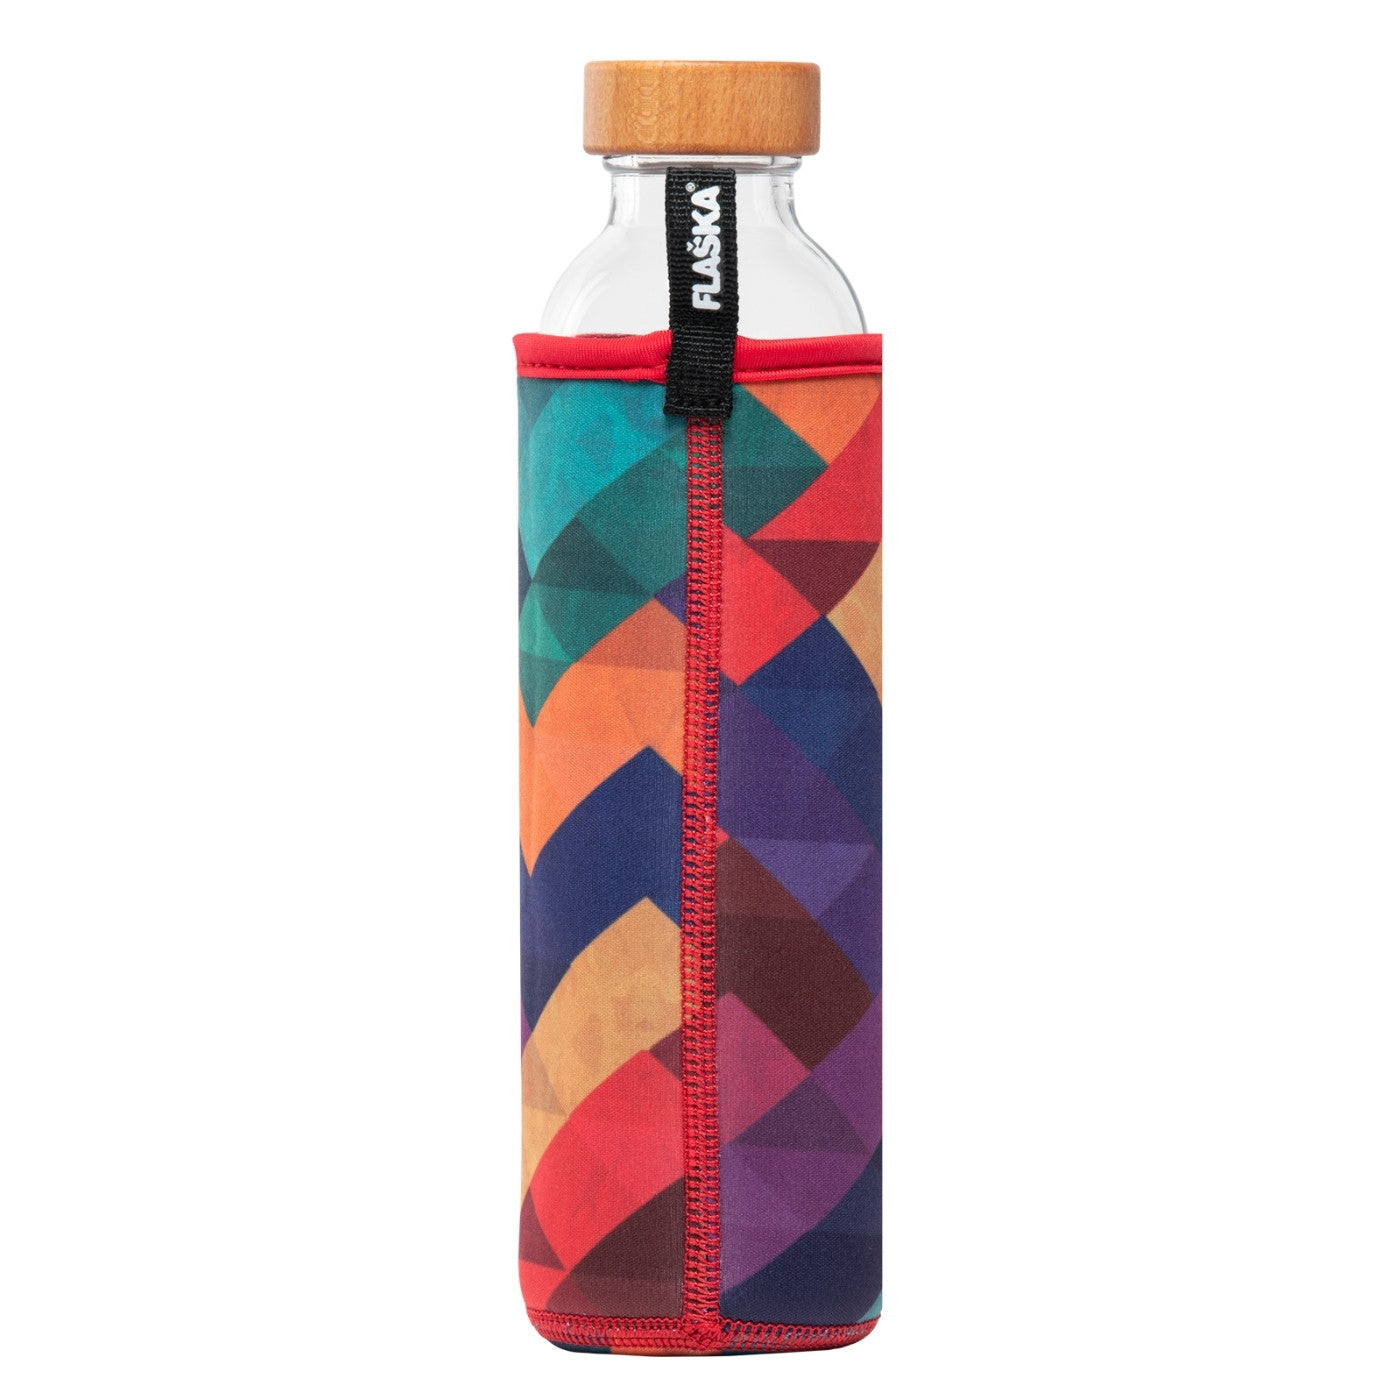 rückansicht der wiederverwendbaren flaska glasflasche mit neopren schutzhülle und geometrischen formen design in verschiedenen farben